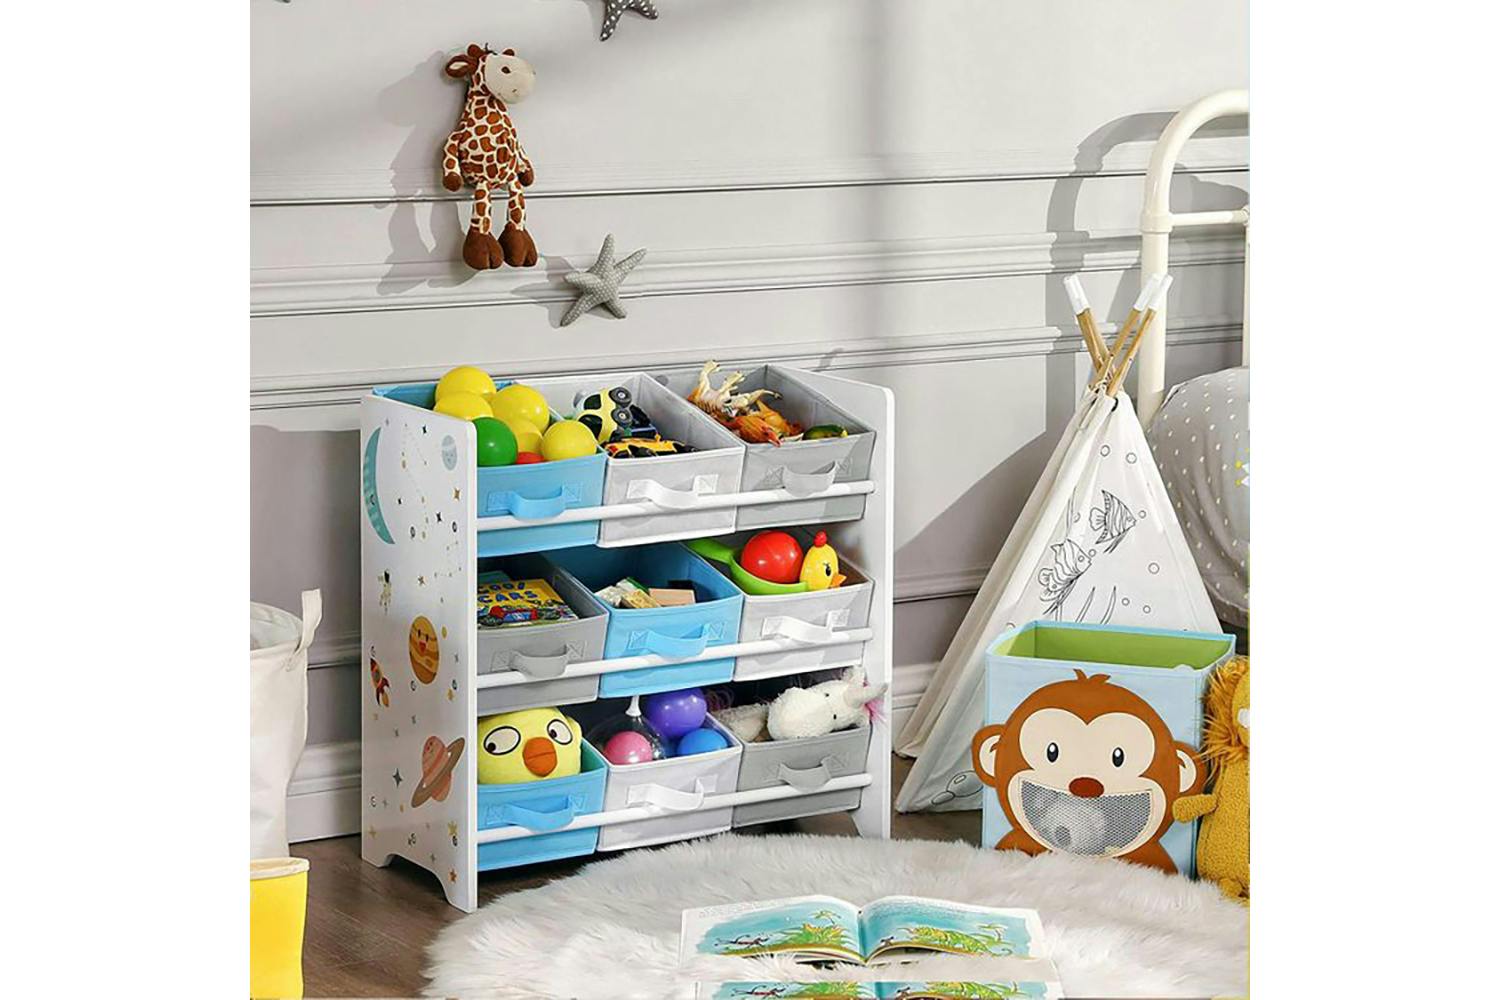 Songmics GKR33WT Children's Room Shelf for Toys